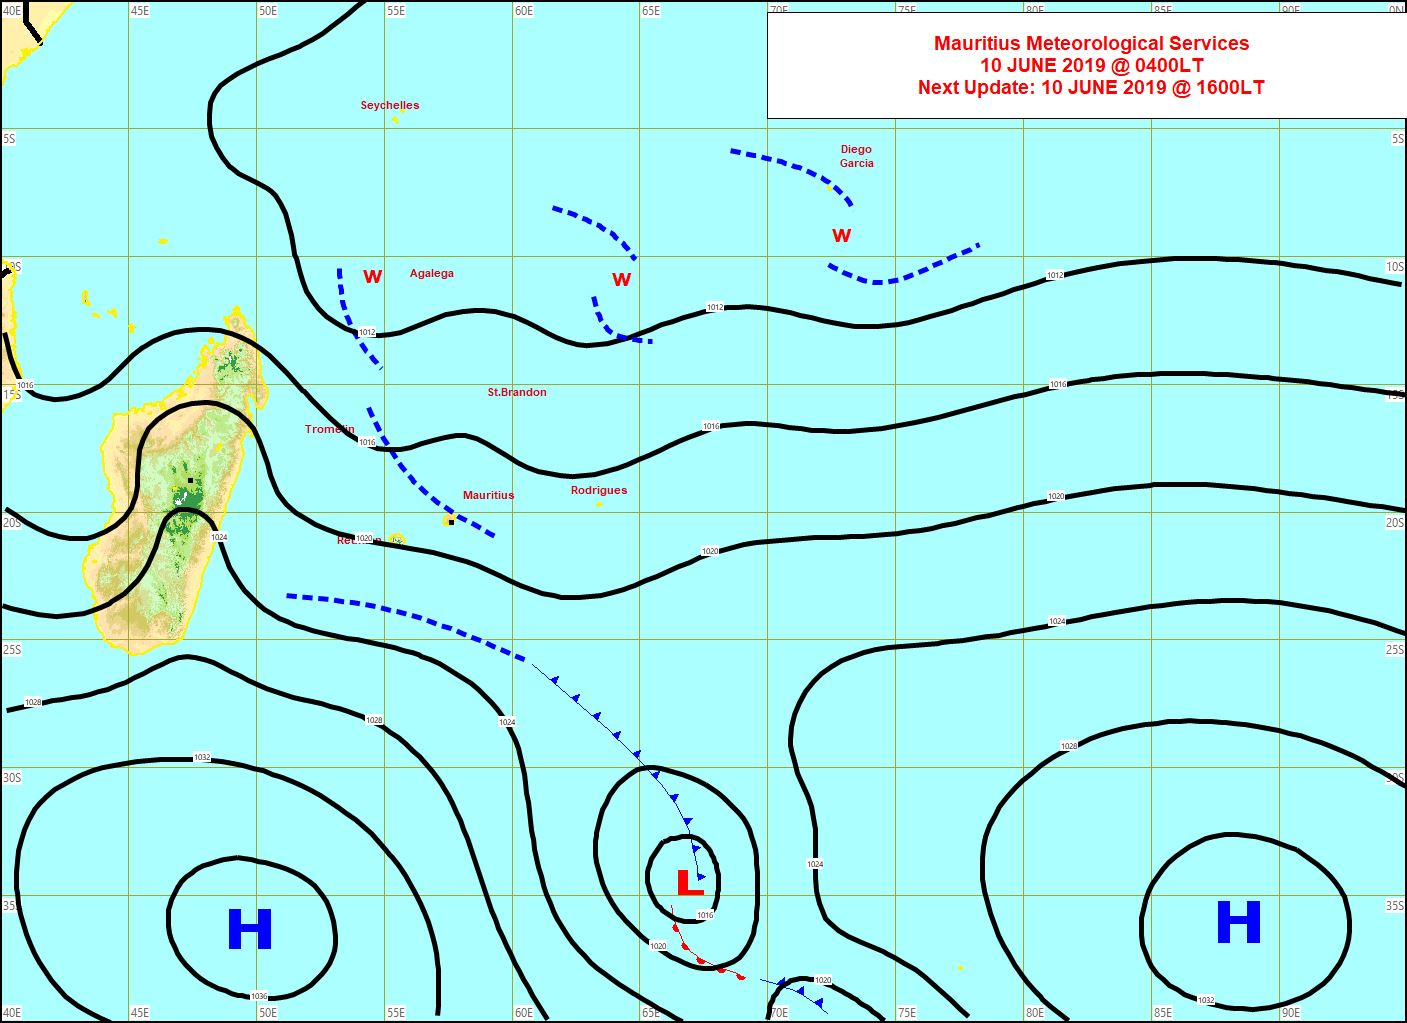 Analyse de la situation de surface tôt ce matin. L'anticyclone(H) se positionne au sud des Mascareignes. Une petite trace frontale le précède et donne un temps humide sur le sud sauvage de la REUNION ce matin. MMS